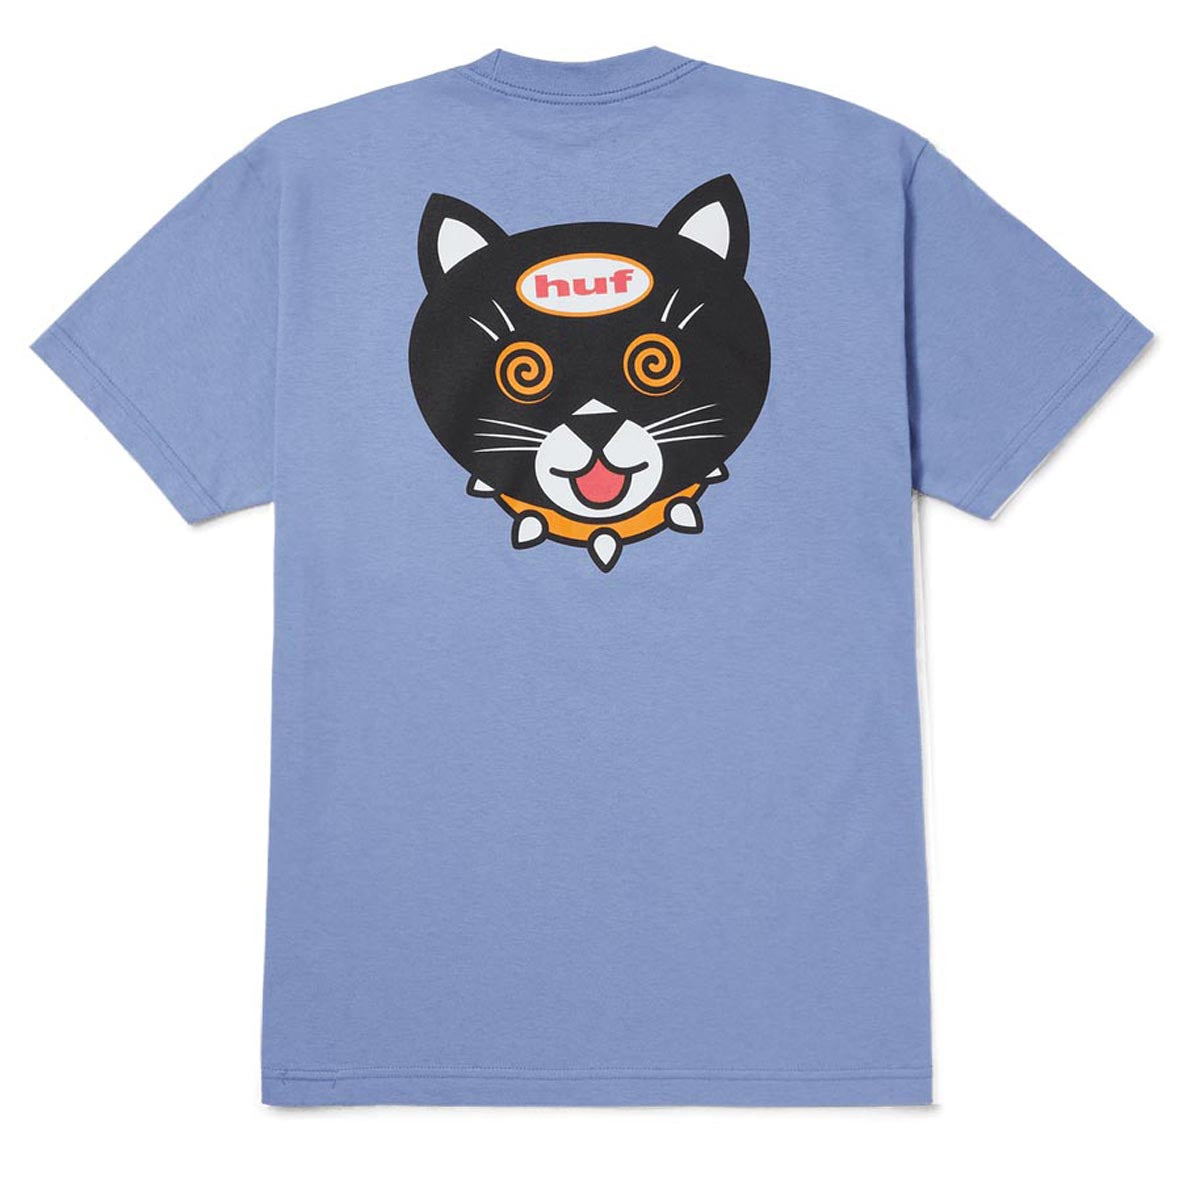 HUF Hypno Cat T-Shirt - Vintage Violet image 1